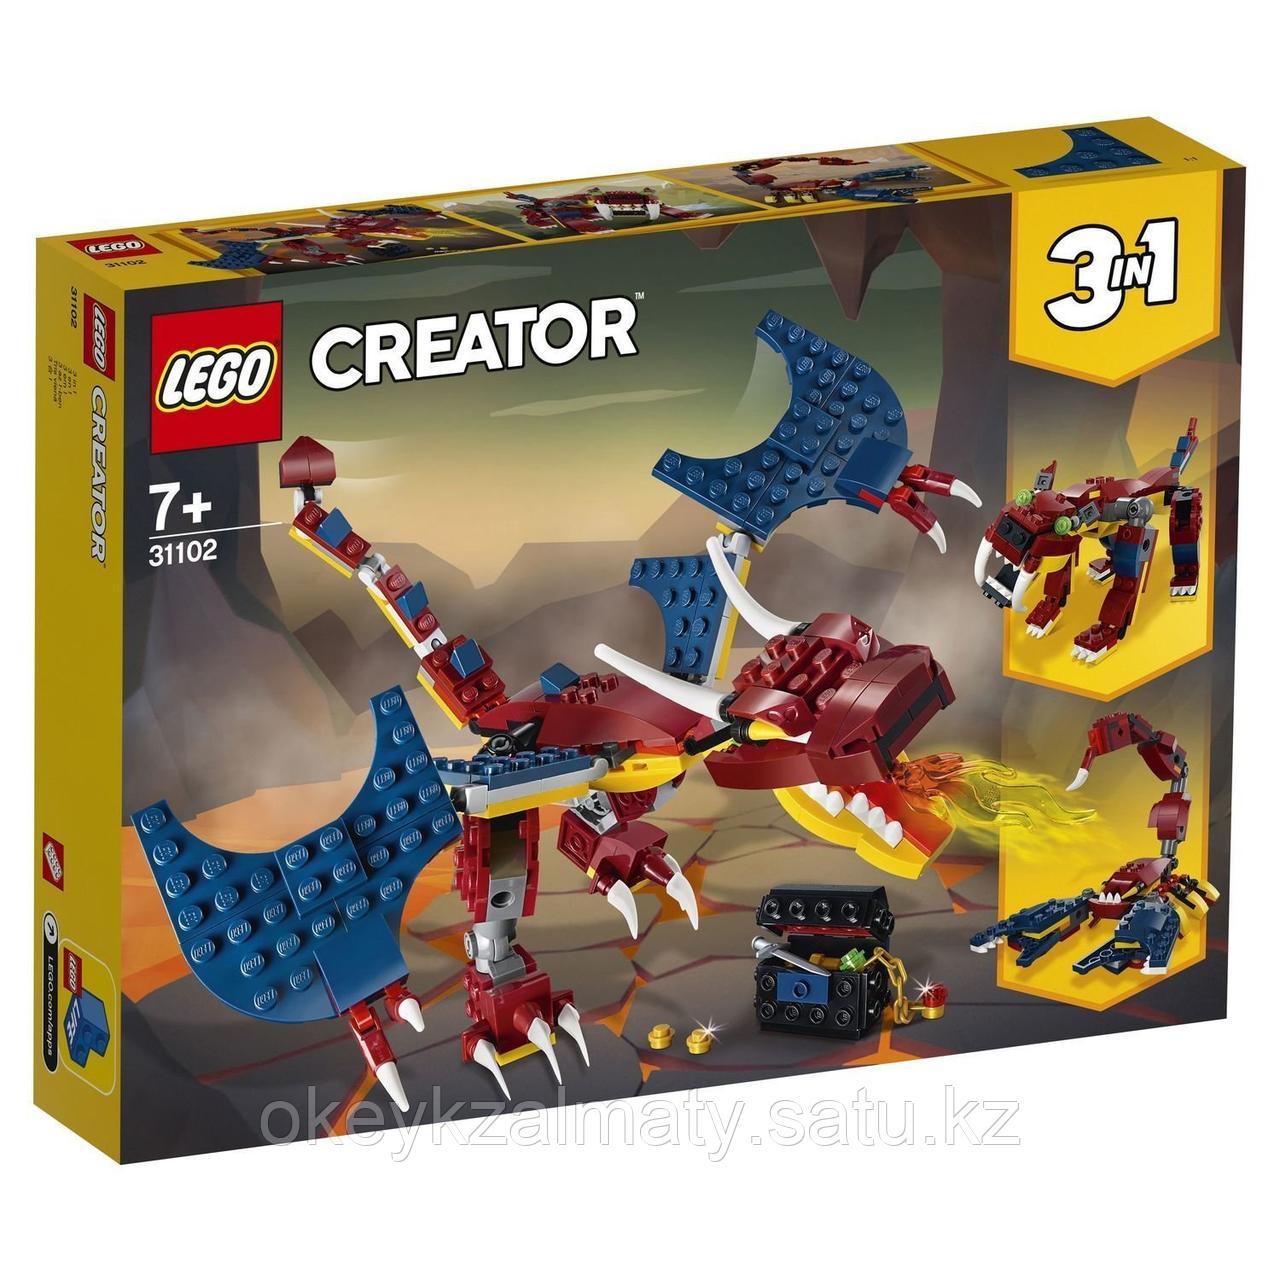 LEGO Creator: Огненный дракон 31102